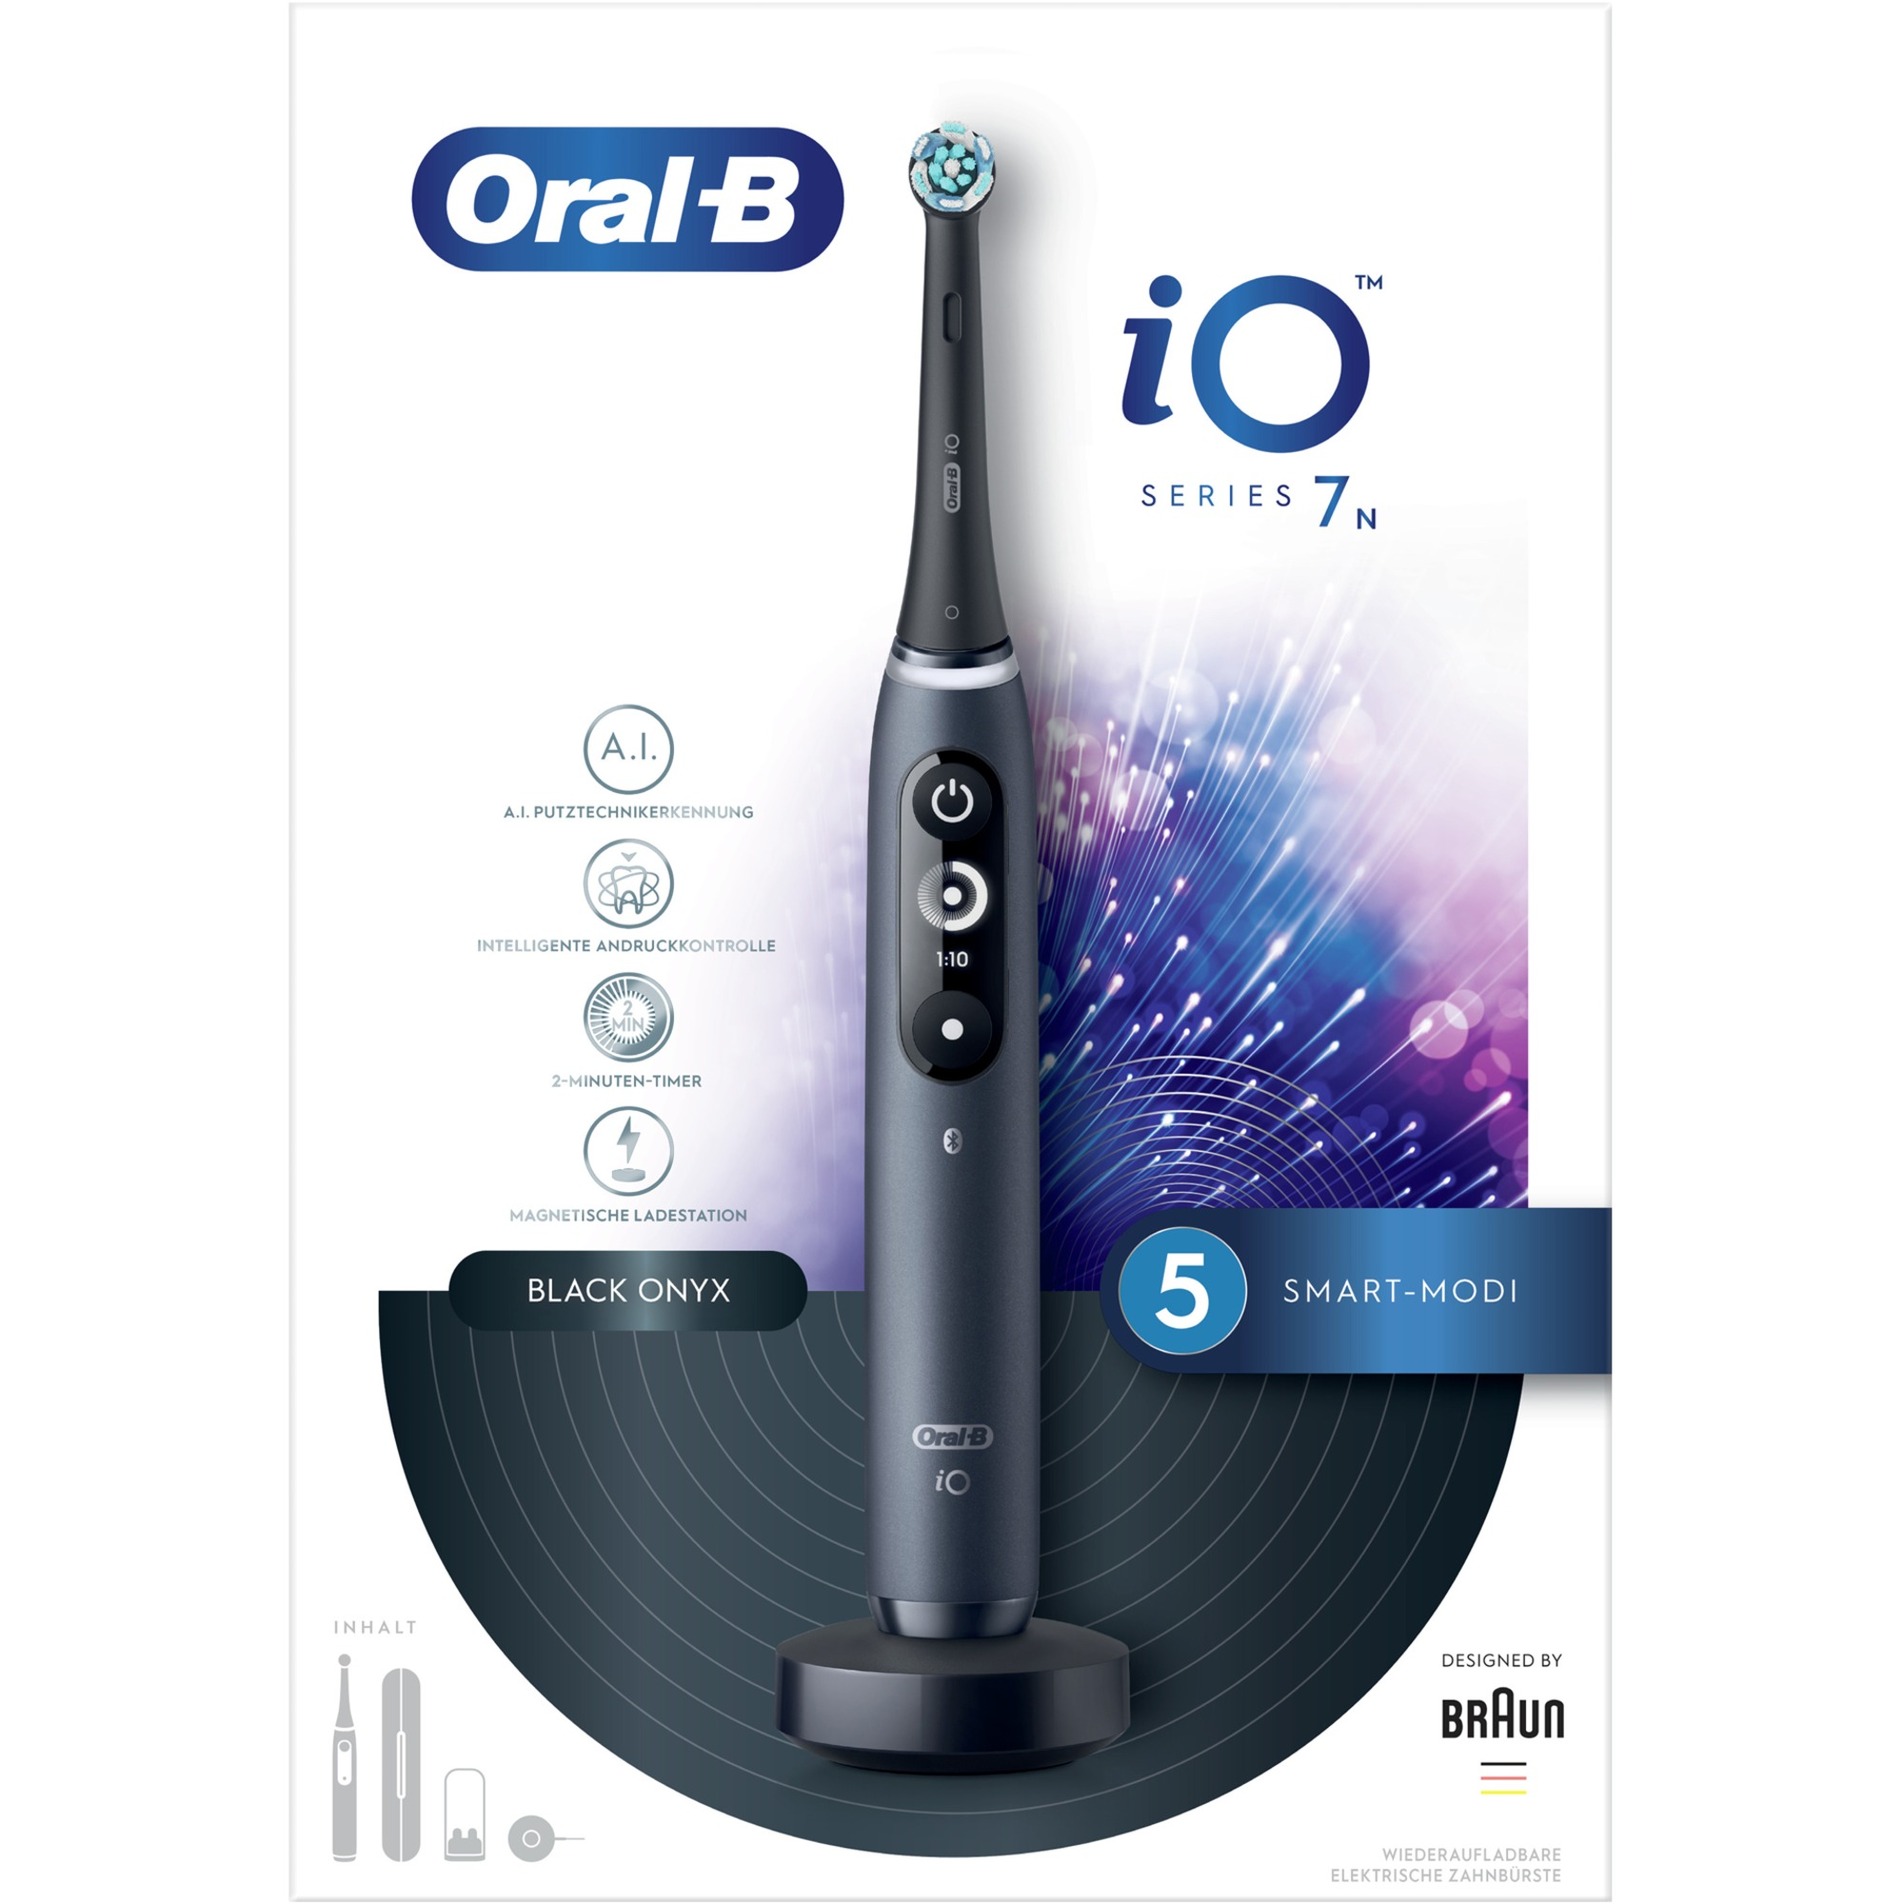 Image of Alternate - Oral-B iO Series 7N, Elektrische Zahnbürste online einkaufen bei Alternate